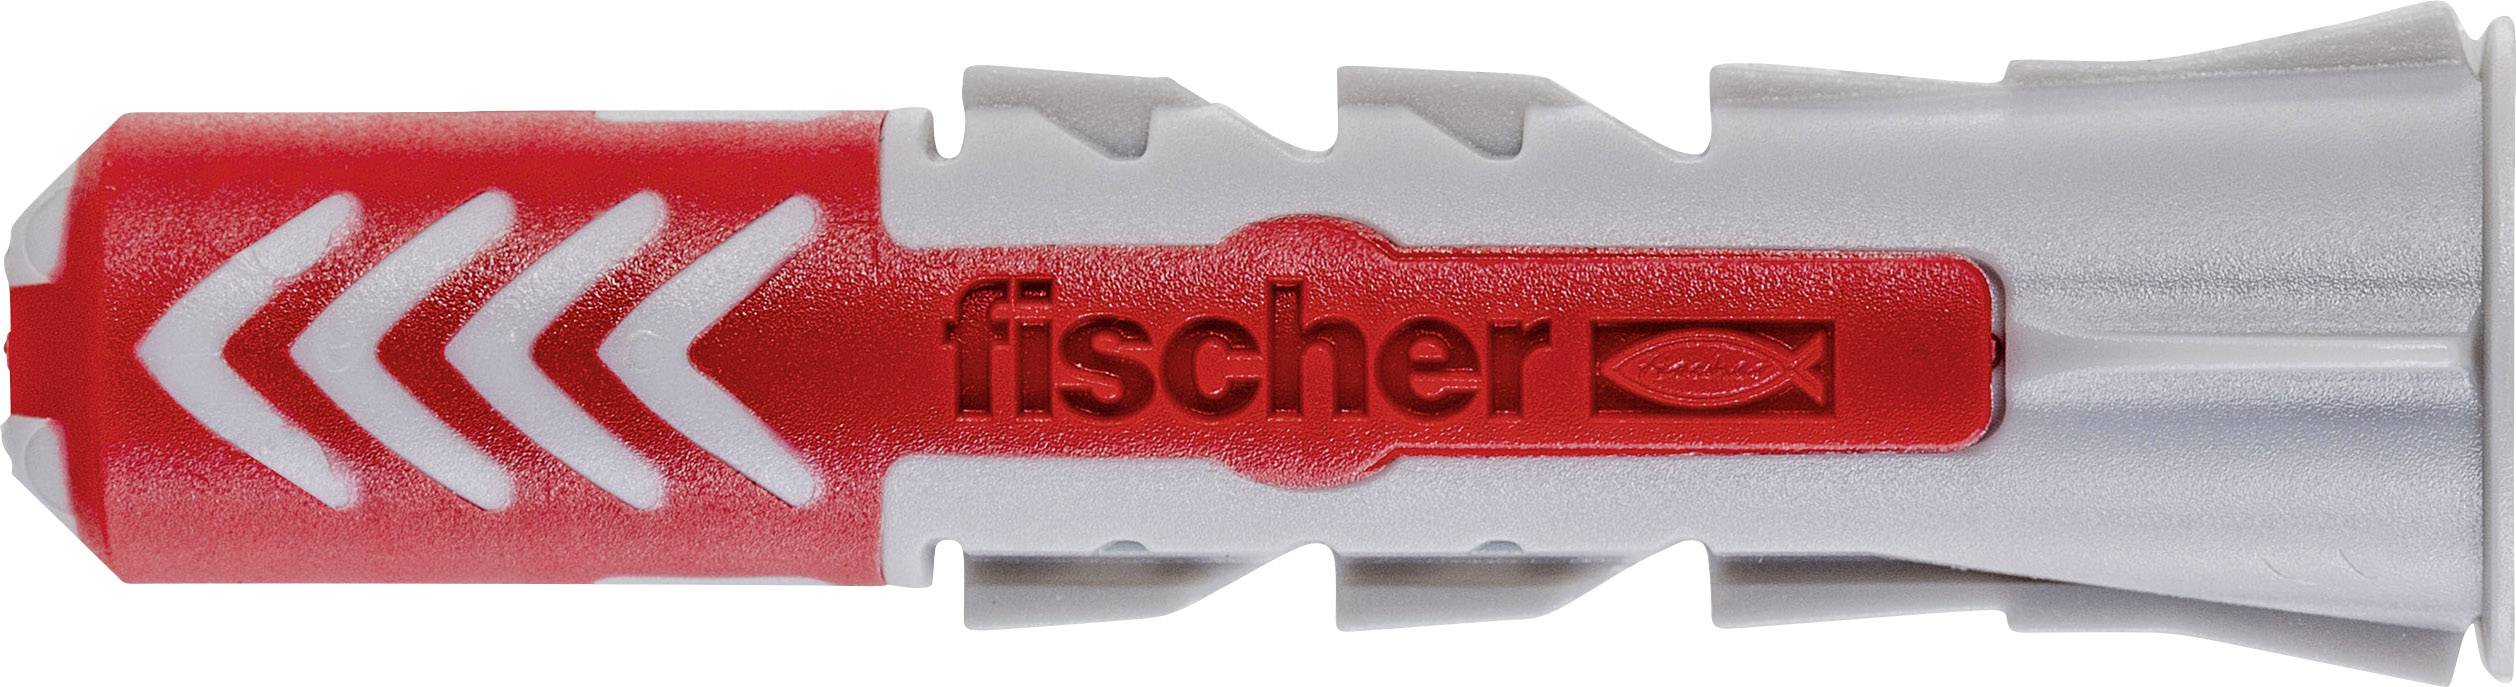 Fischer DUOPOWER 6 x 30 2-Komponenten-Dübel 30 mm 6 mm 555006 100 St. 